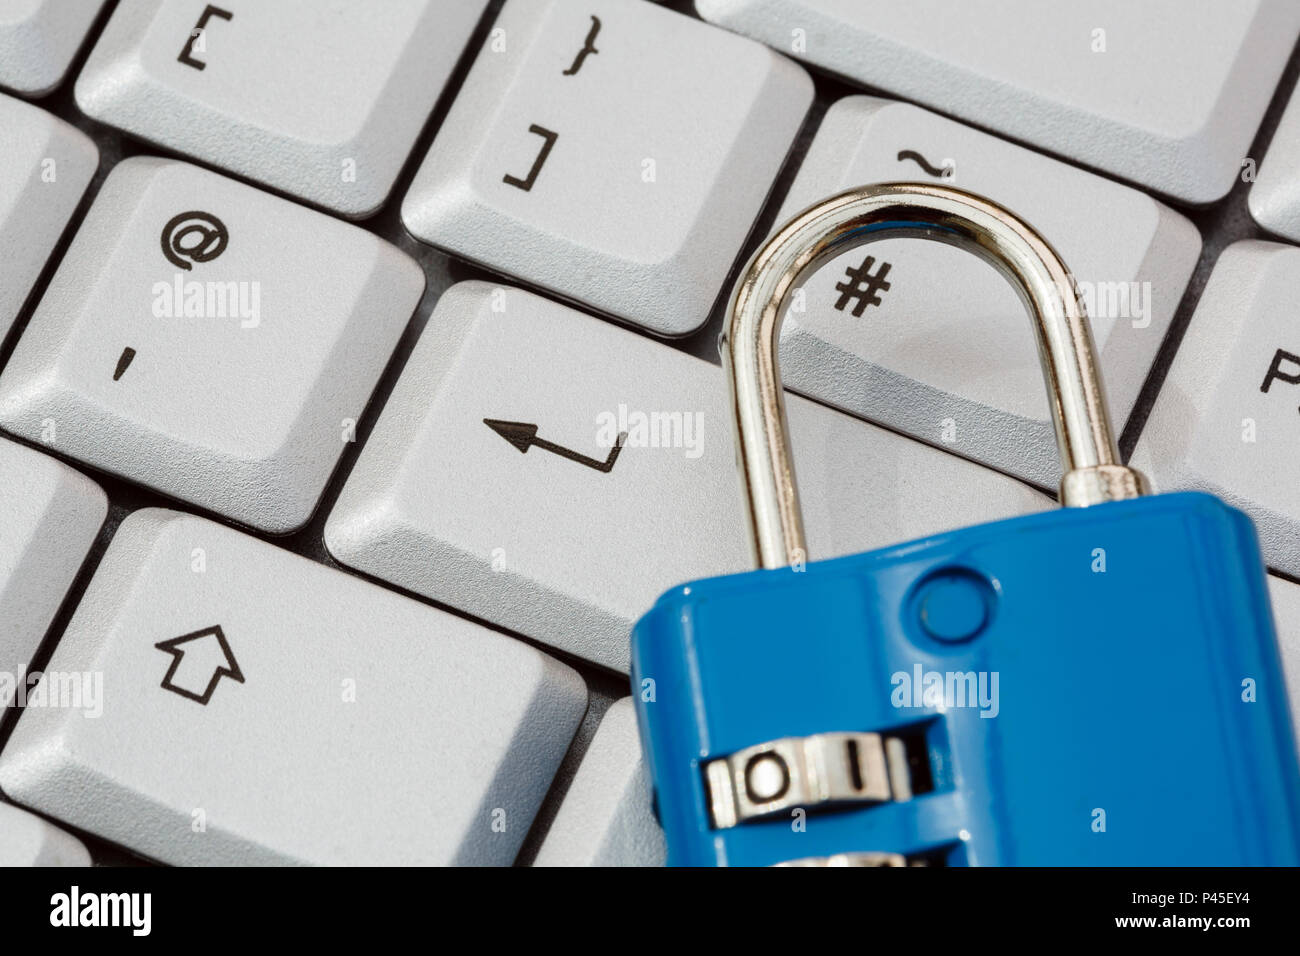 Eine Tastatur mit Key eingeben und ein Vorhängeschloss online Cyber Security und Datenschutz BIPR Konzept zu veranschaulichen. England Großbritannien Großbritannien Stockfoto